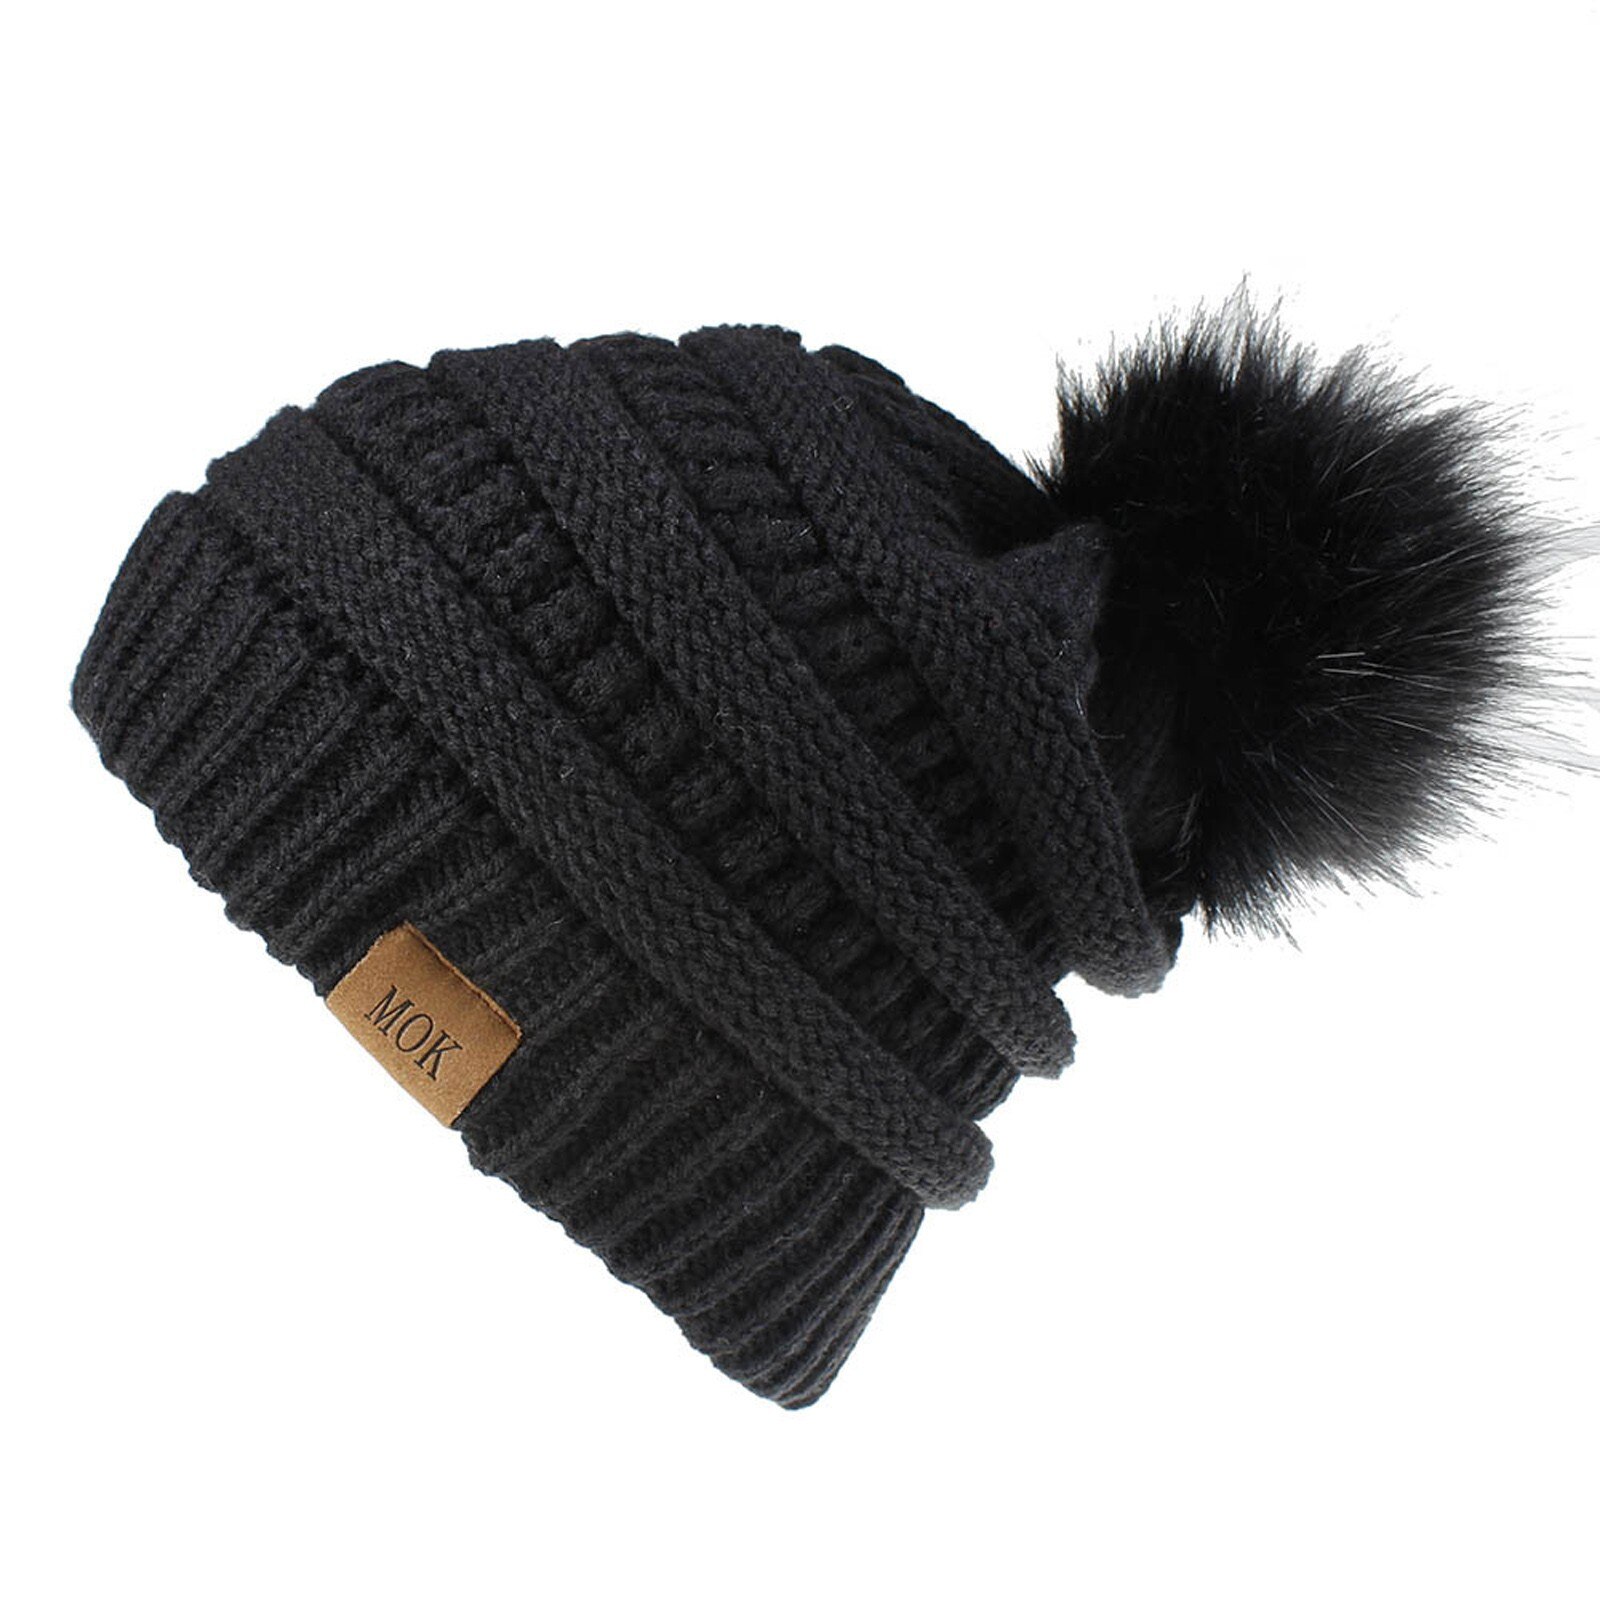 E la moda donna nuova E di alta qualità mantiene caldi cappelli invernali cappello a orlo in lana lavorato a maglia morbido delicato sulla pelle, traspirante: BK